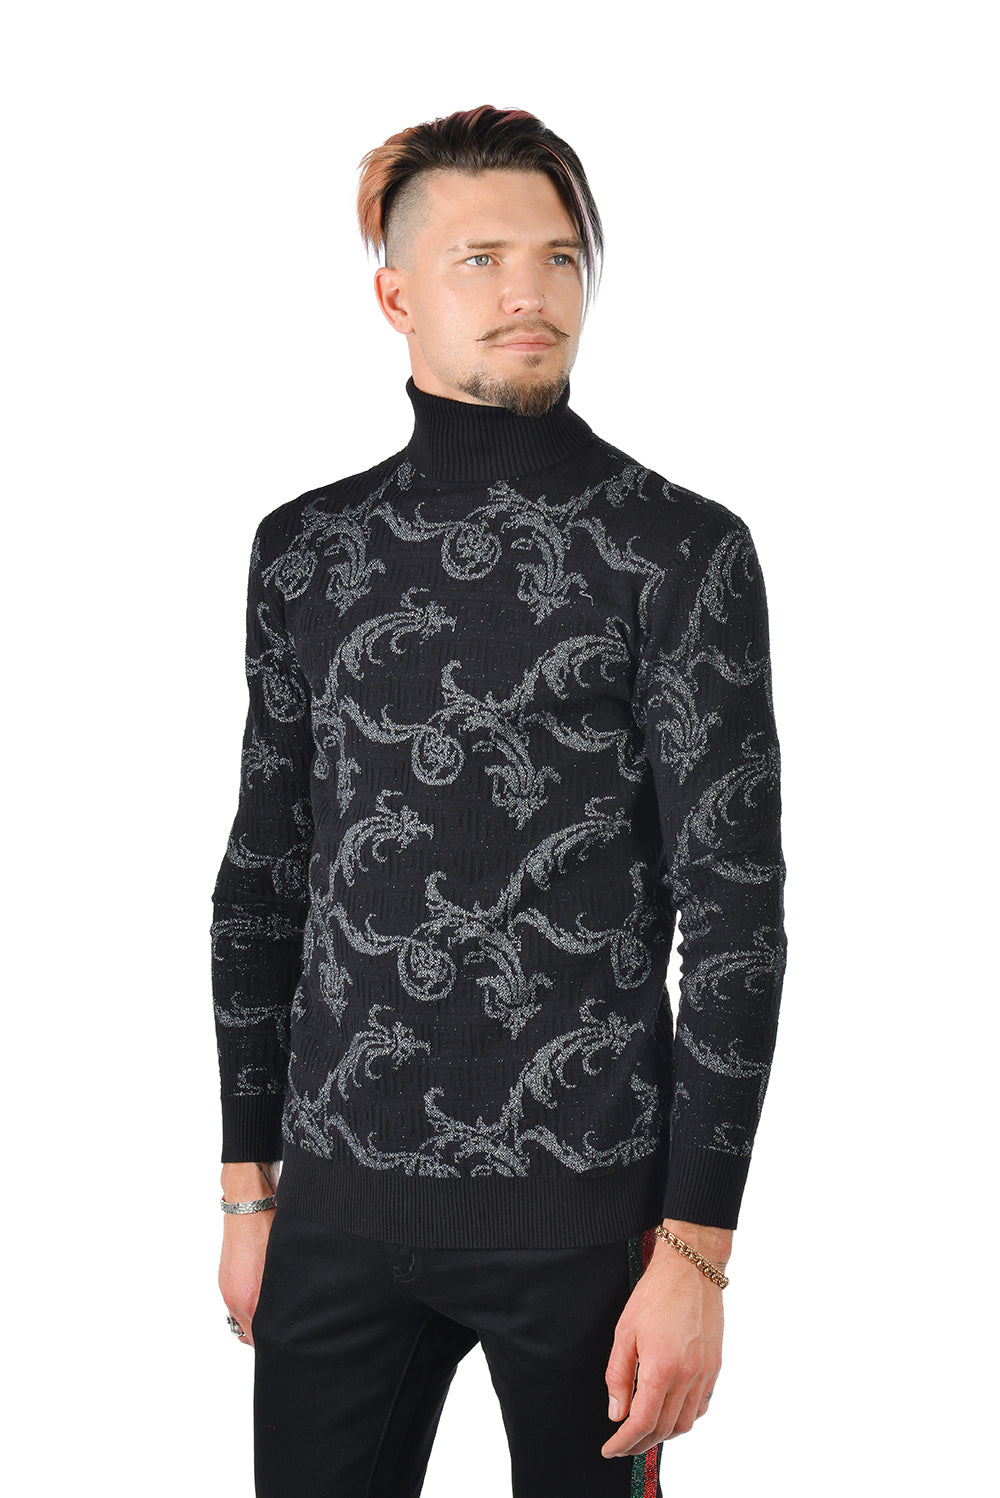 Barabas Men's Floral Print Design Long Sleeve Turtleneck Sweater 2LS2102 Black Silver